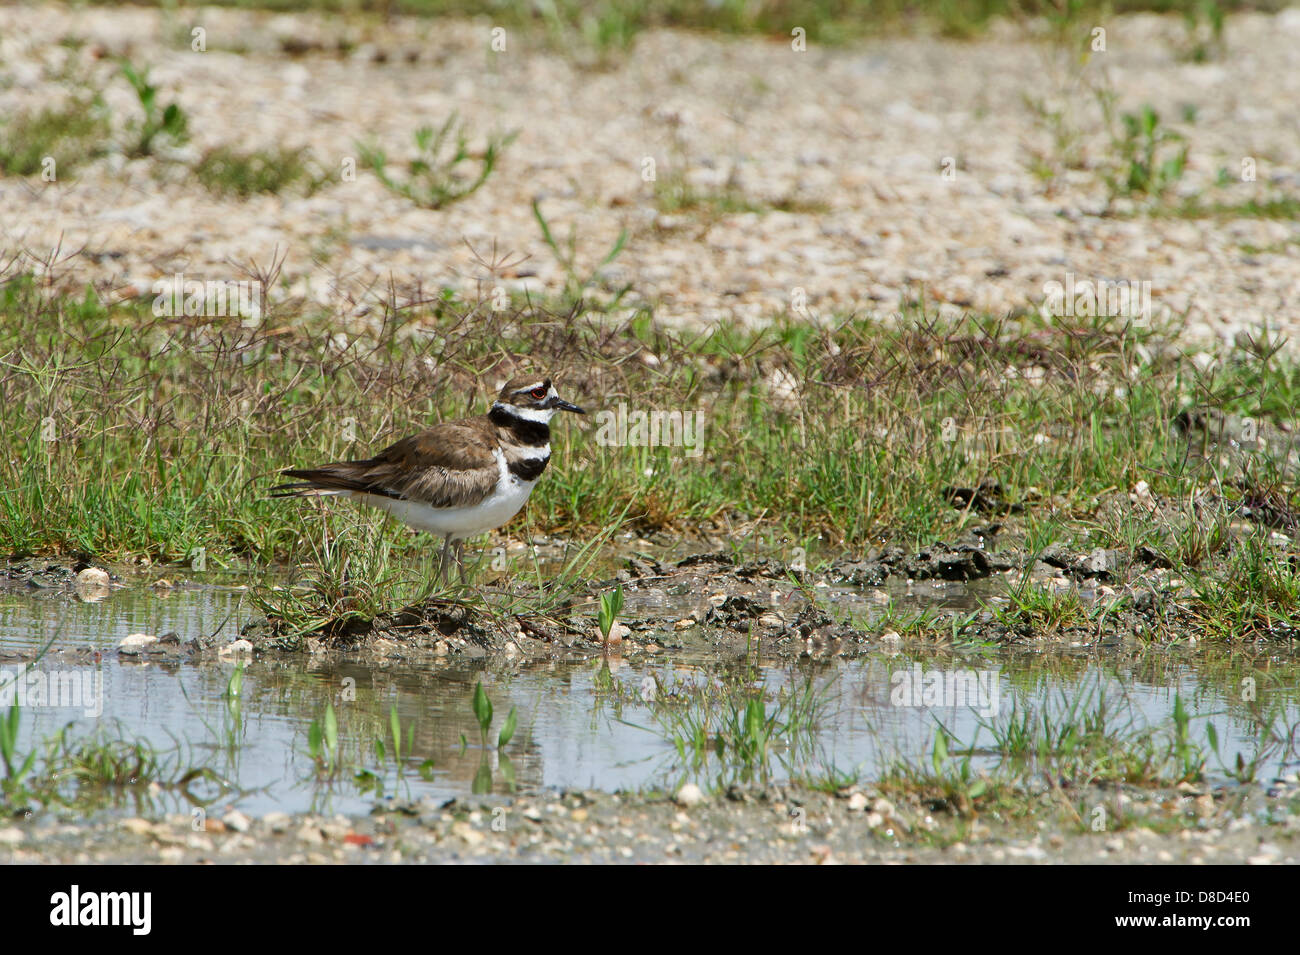 Killdeer bird in cerca di cibo in una palude, penisola di Bolivar, Texas, Stati Uniti d'America Foto Stock